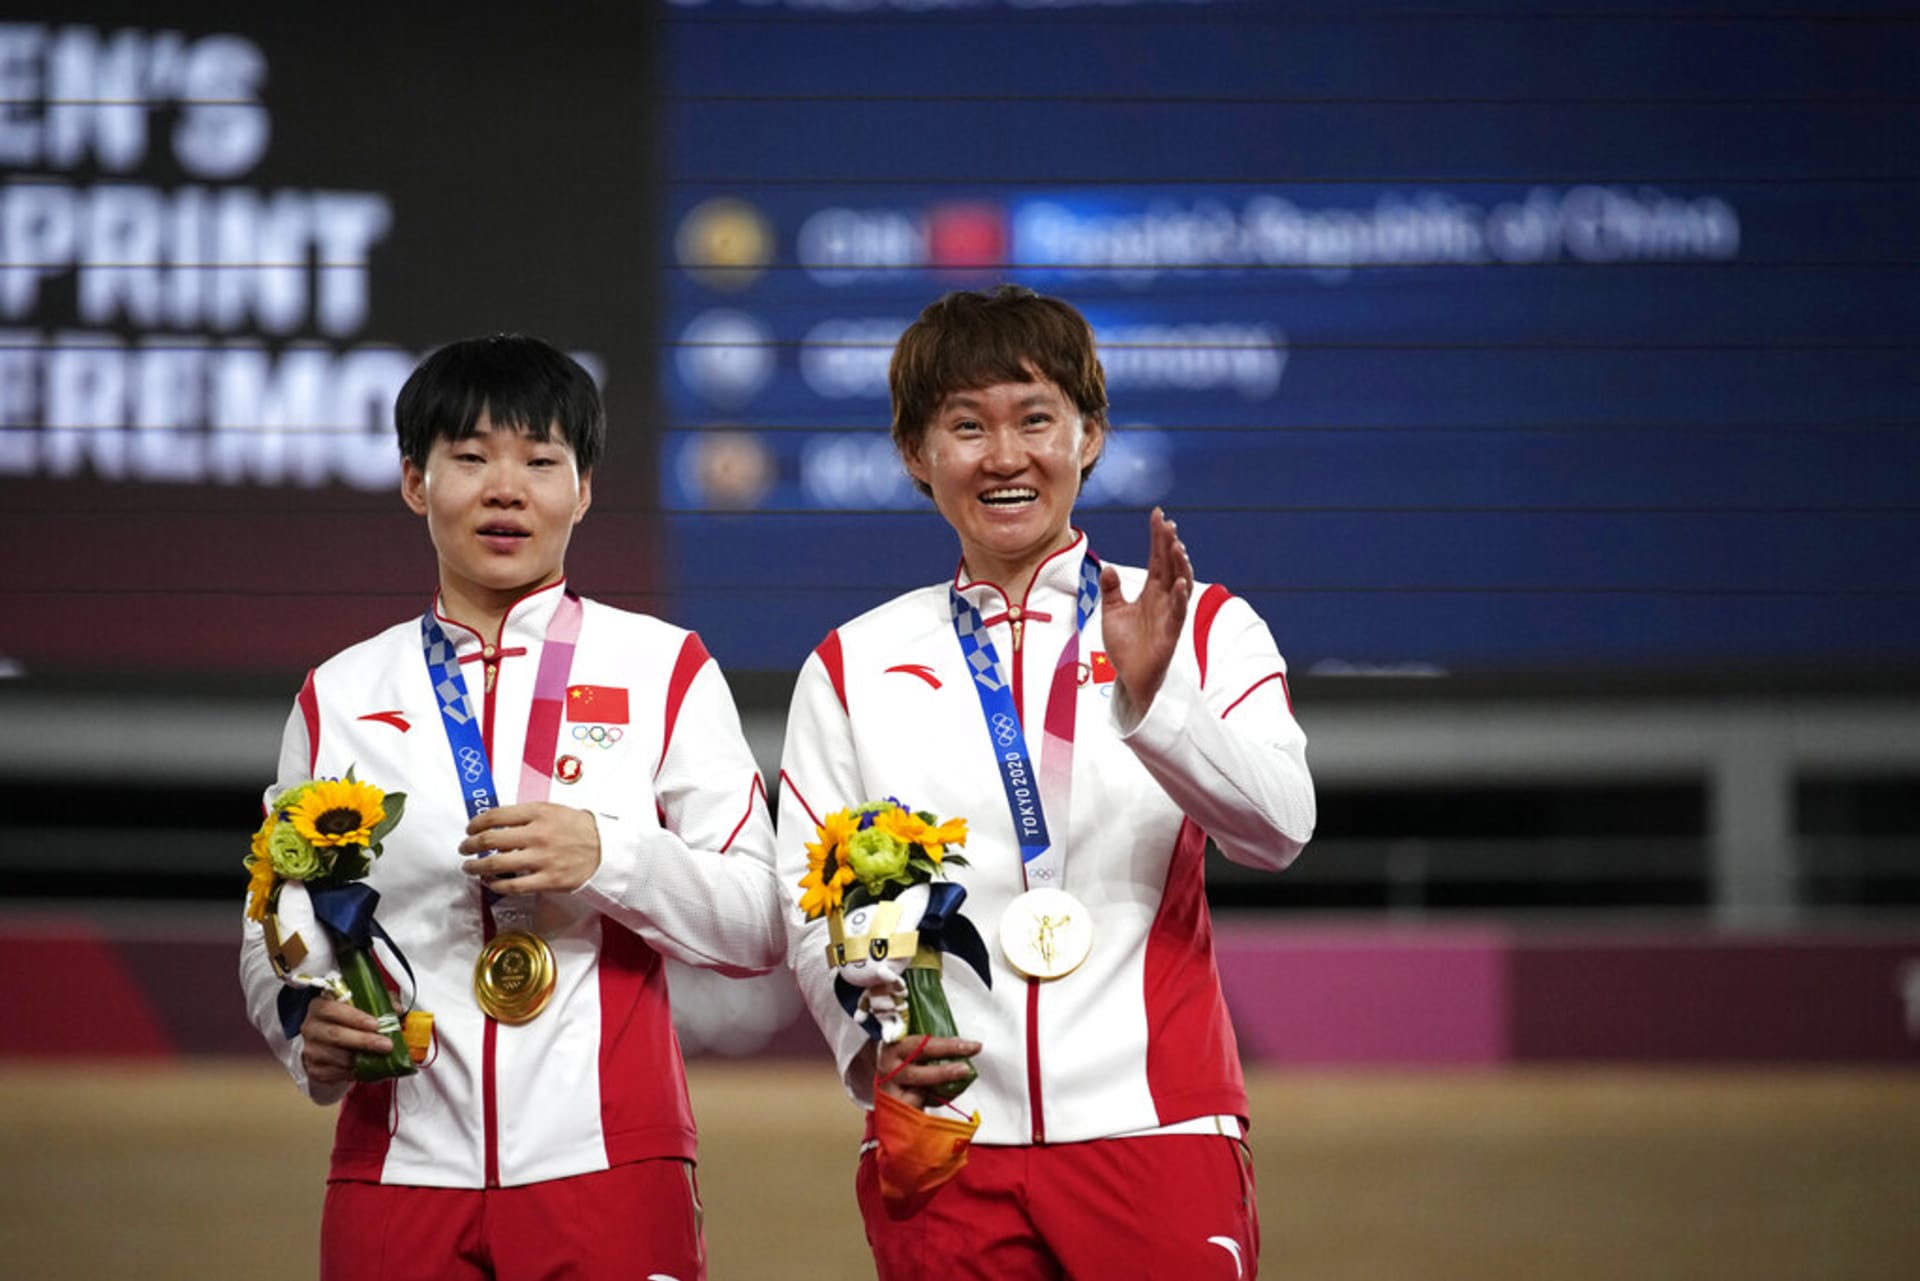 Zlaté medailistky z týmového sprintu v dráhové cyklistice Čung Tchien-š' a Pao Šan-ťü měly připnuté odznáčky s Mao Ce-tungem.